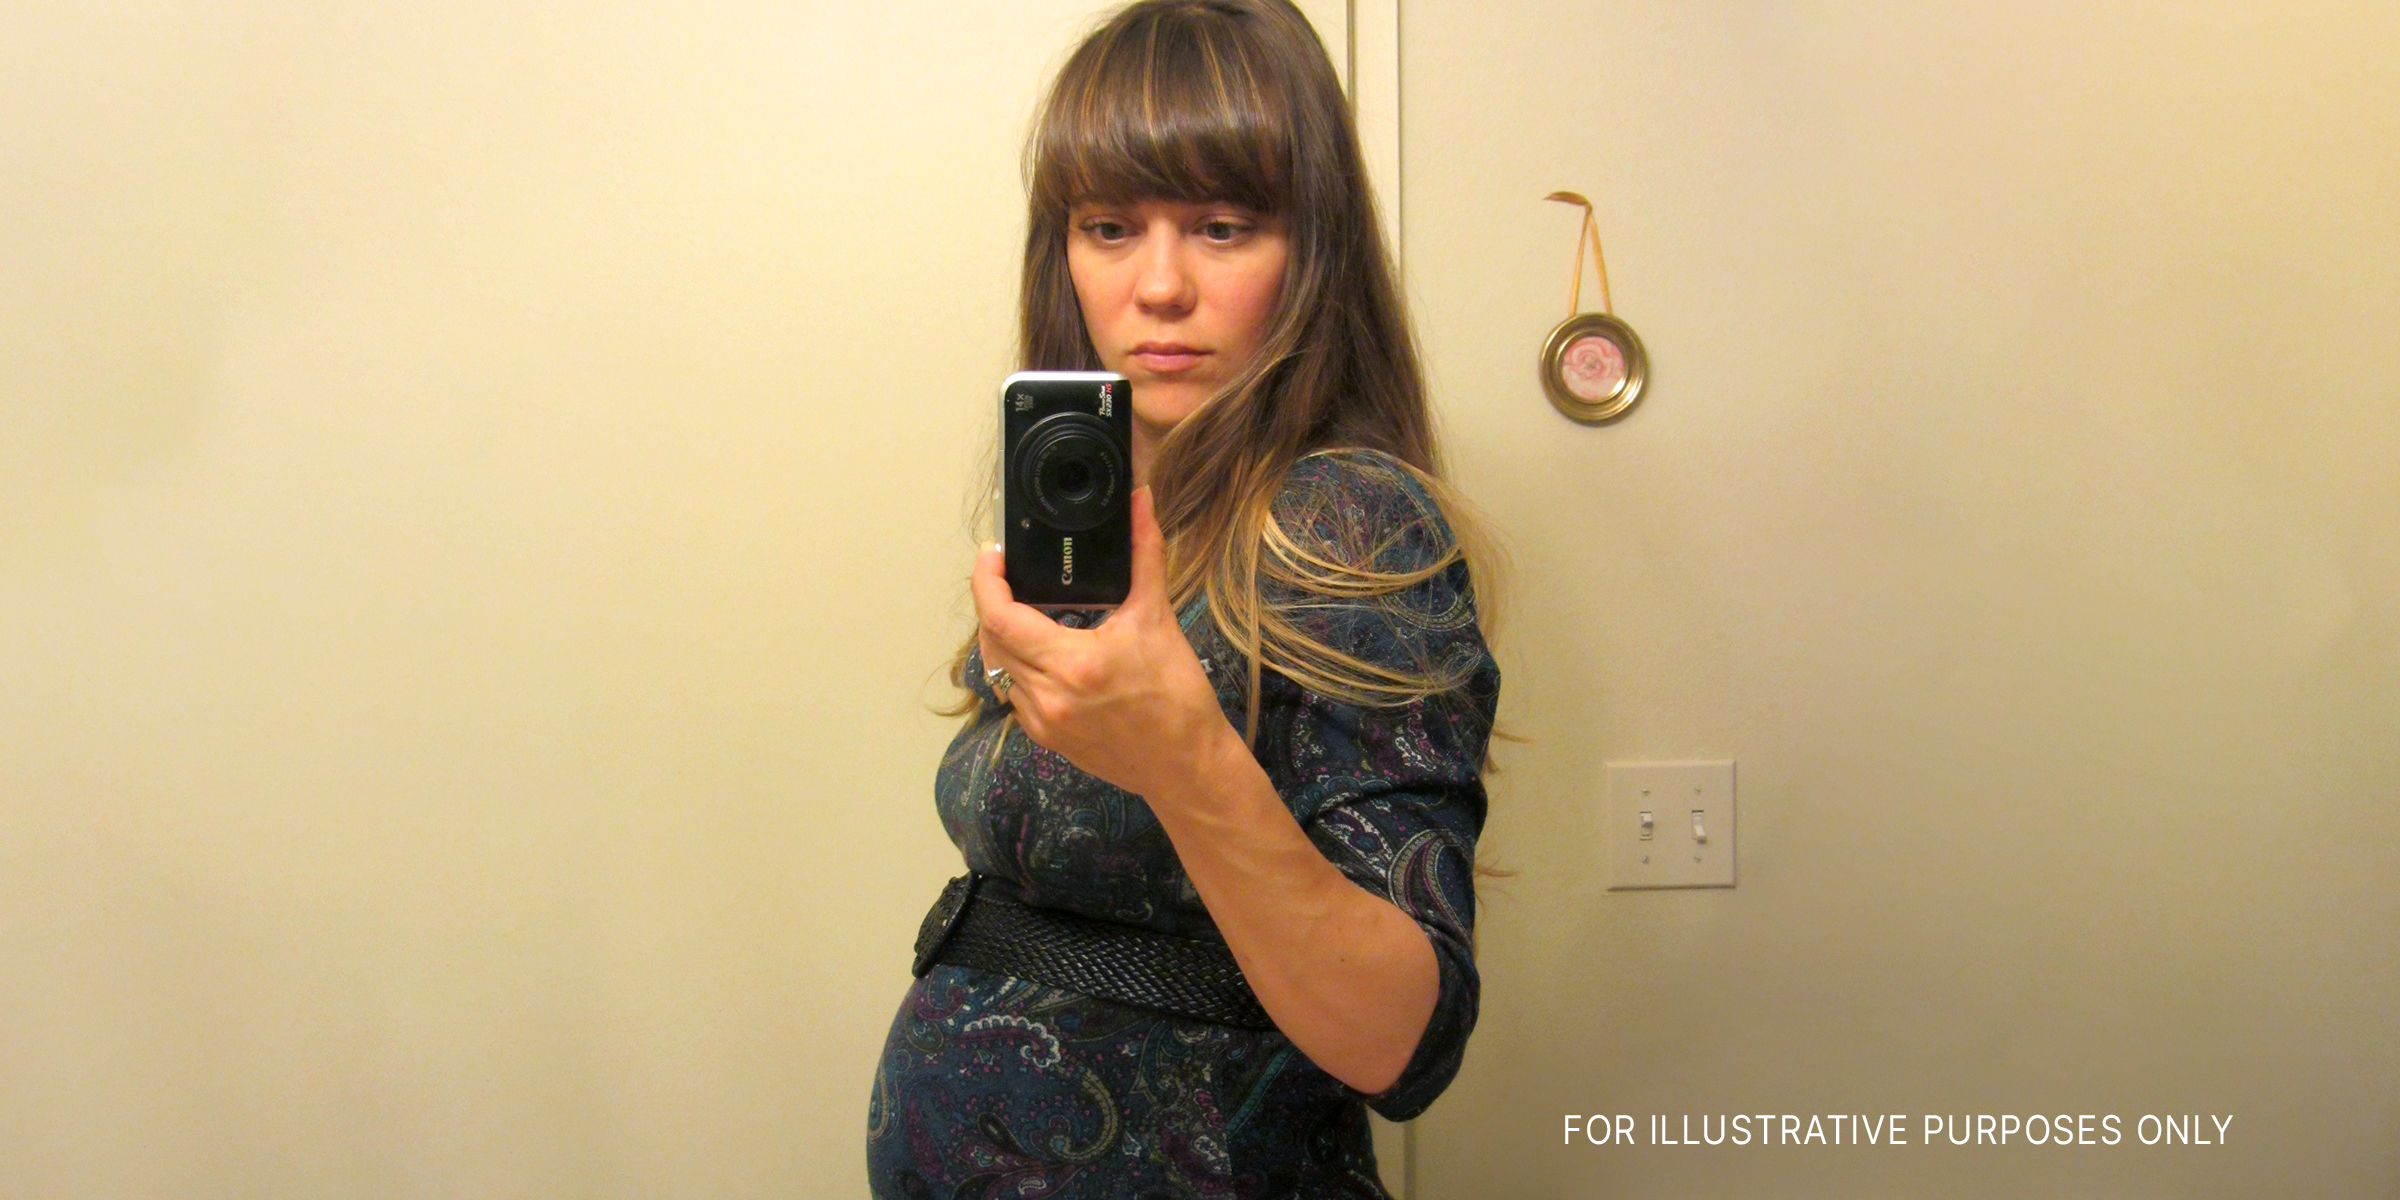 Pregnant woman | Source: flickr.com